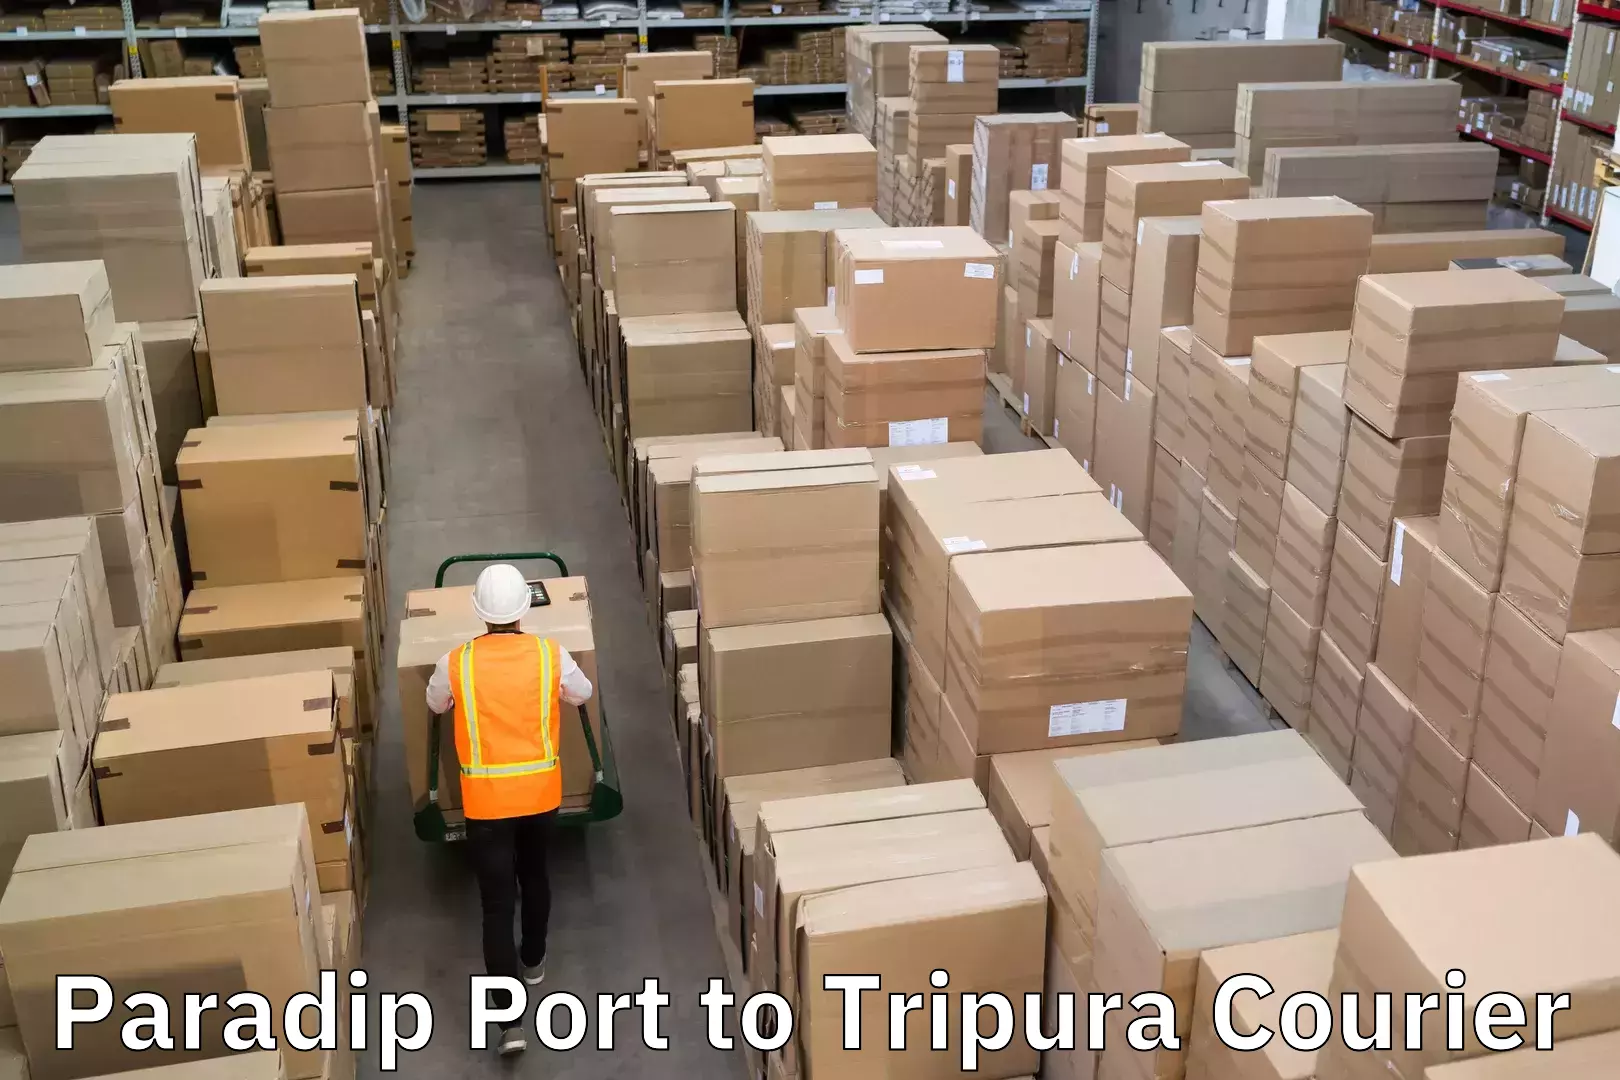 Door-to-door freight service Paradip Port to Tripura